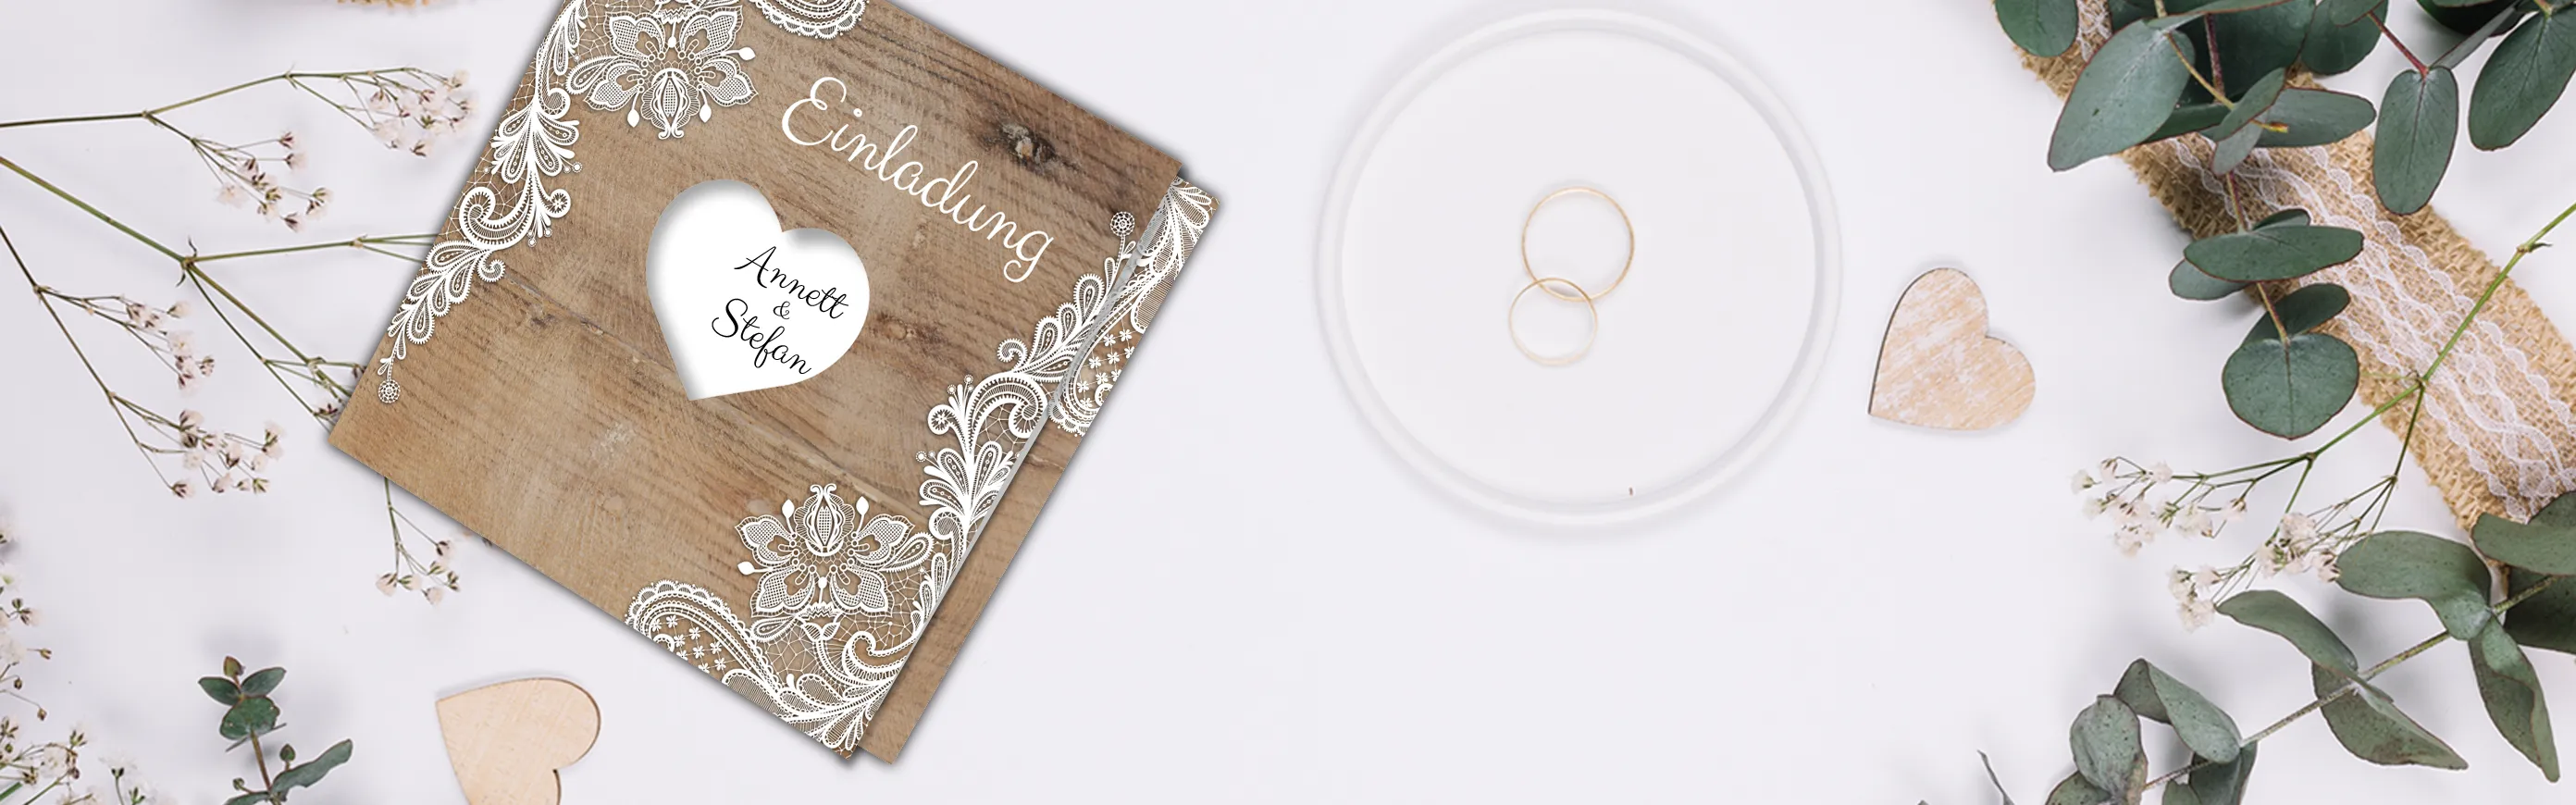 Hochzeit Einladungskarten im Rustikal Design  mit Herz Sonderform selbst gestalten